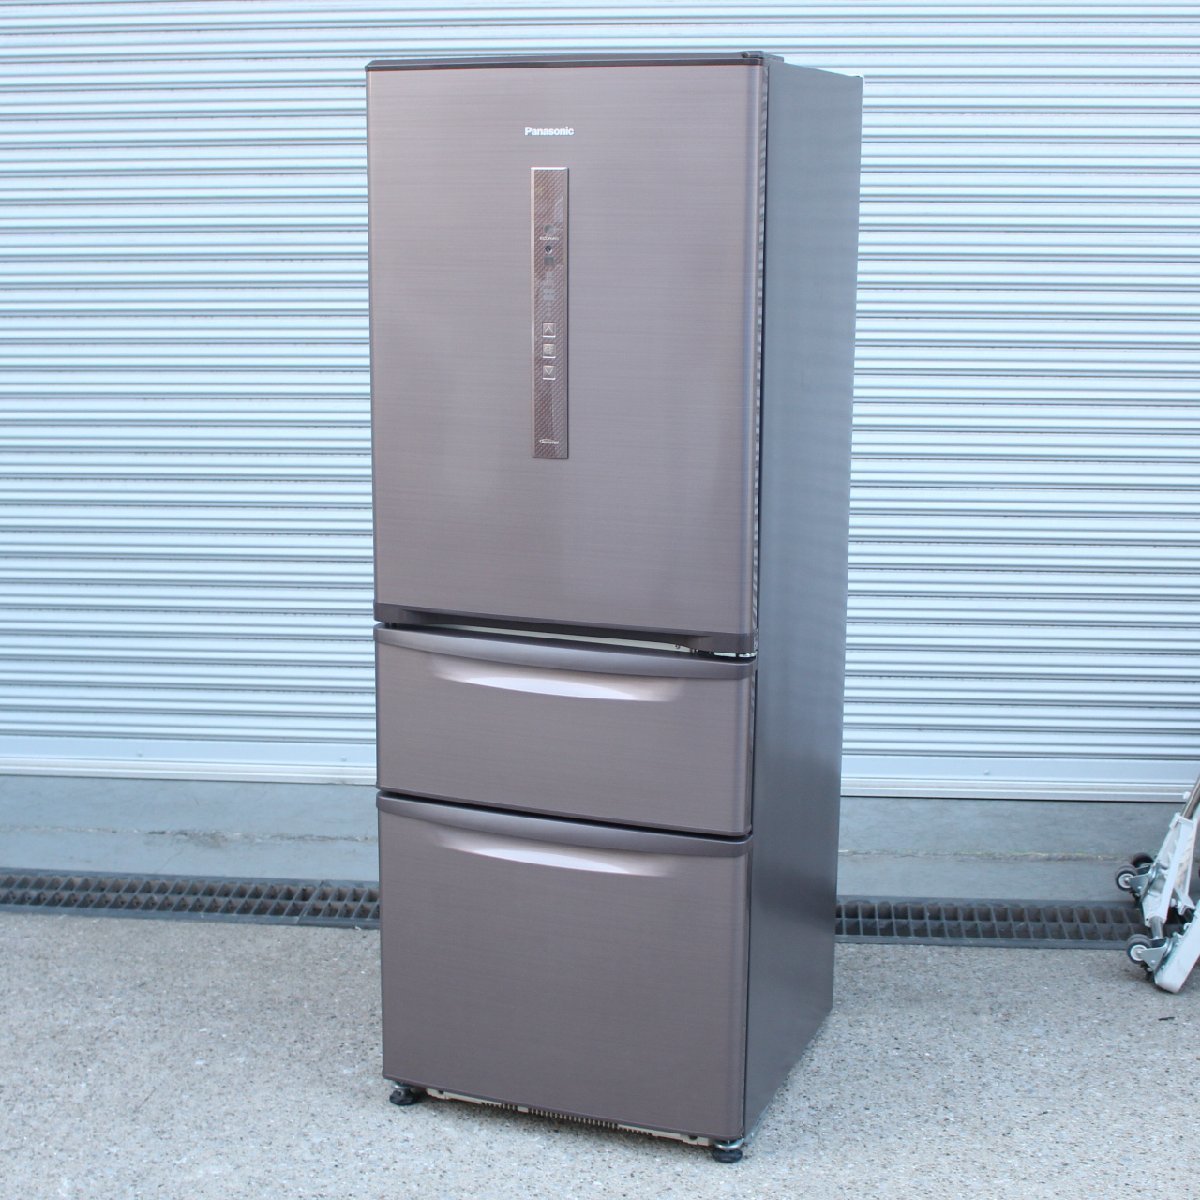 川崎市多摩区にて パナソニック 冷凍冷蔵庫 NR-C32EM-T 2016年製 を出張買取させて頂きました。